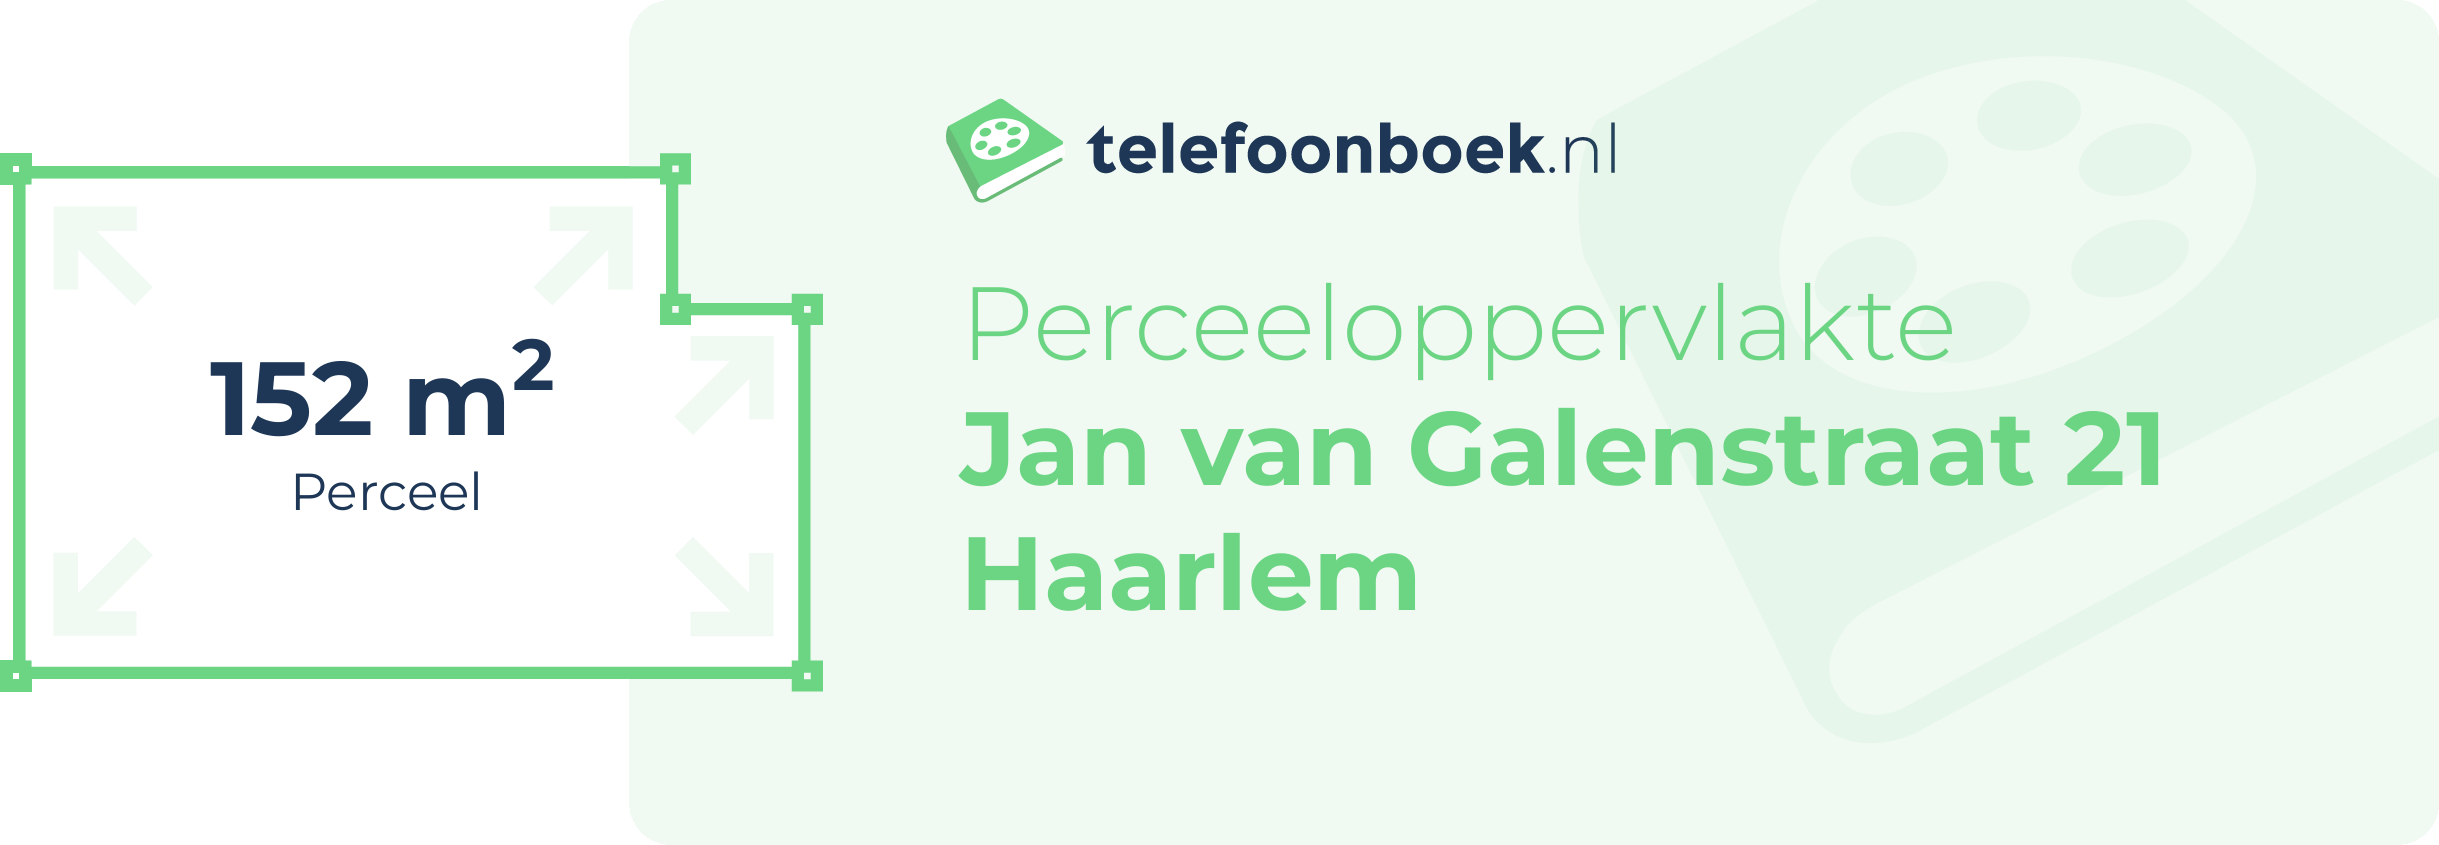 Perceeloppervlakte Jan Van Galenstraat 21 Haarlem